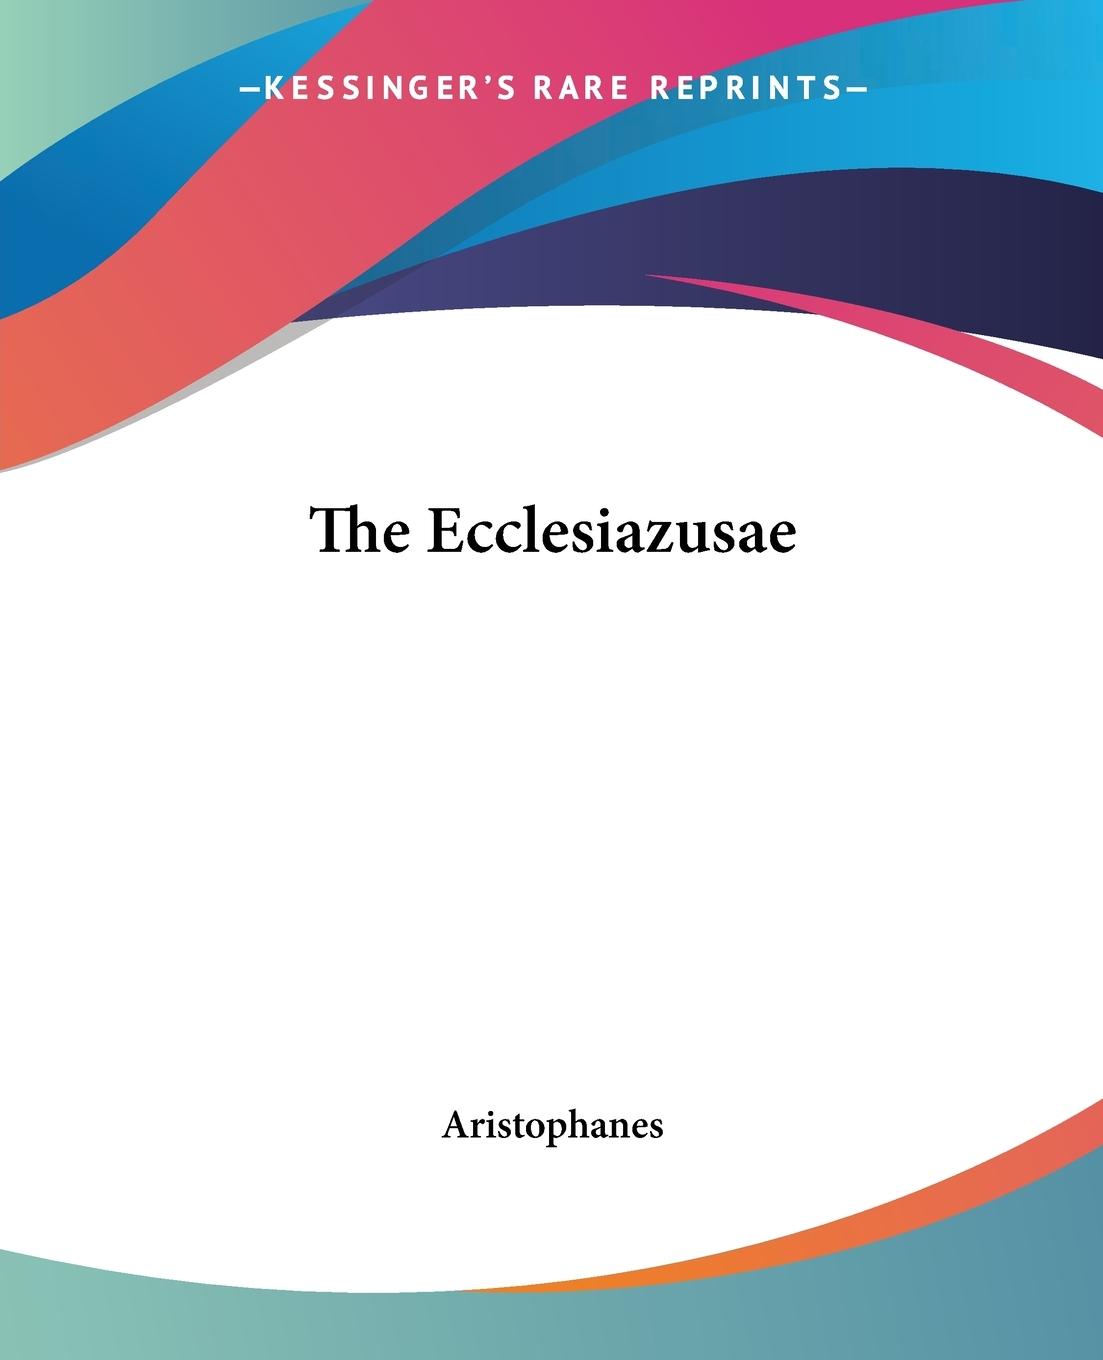 The Ecclesiazusae - Aristophanes